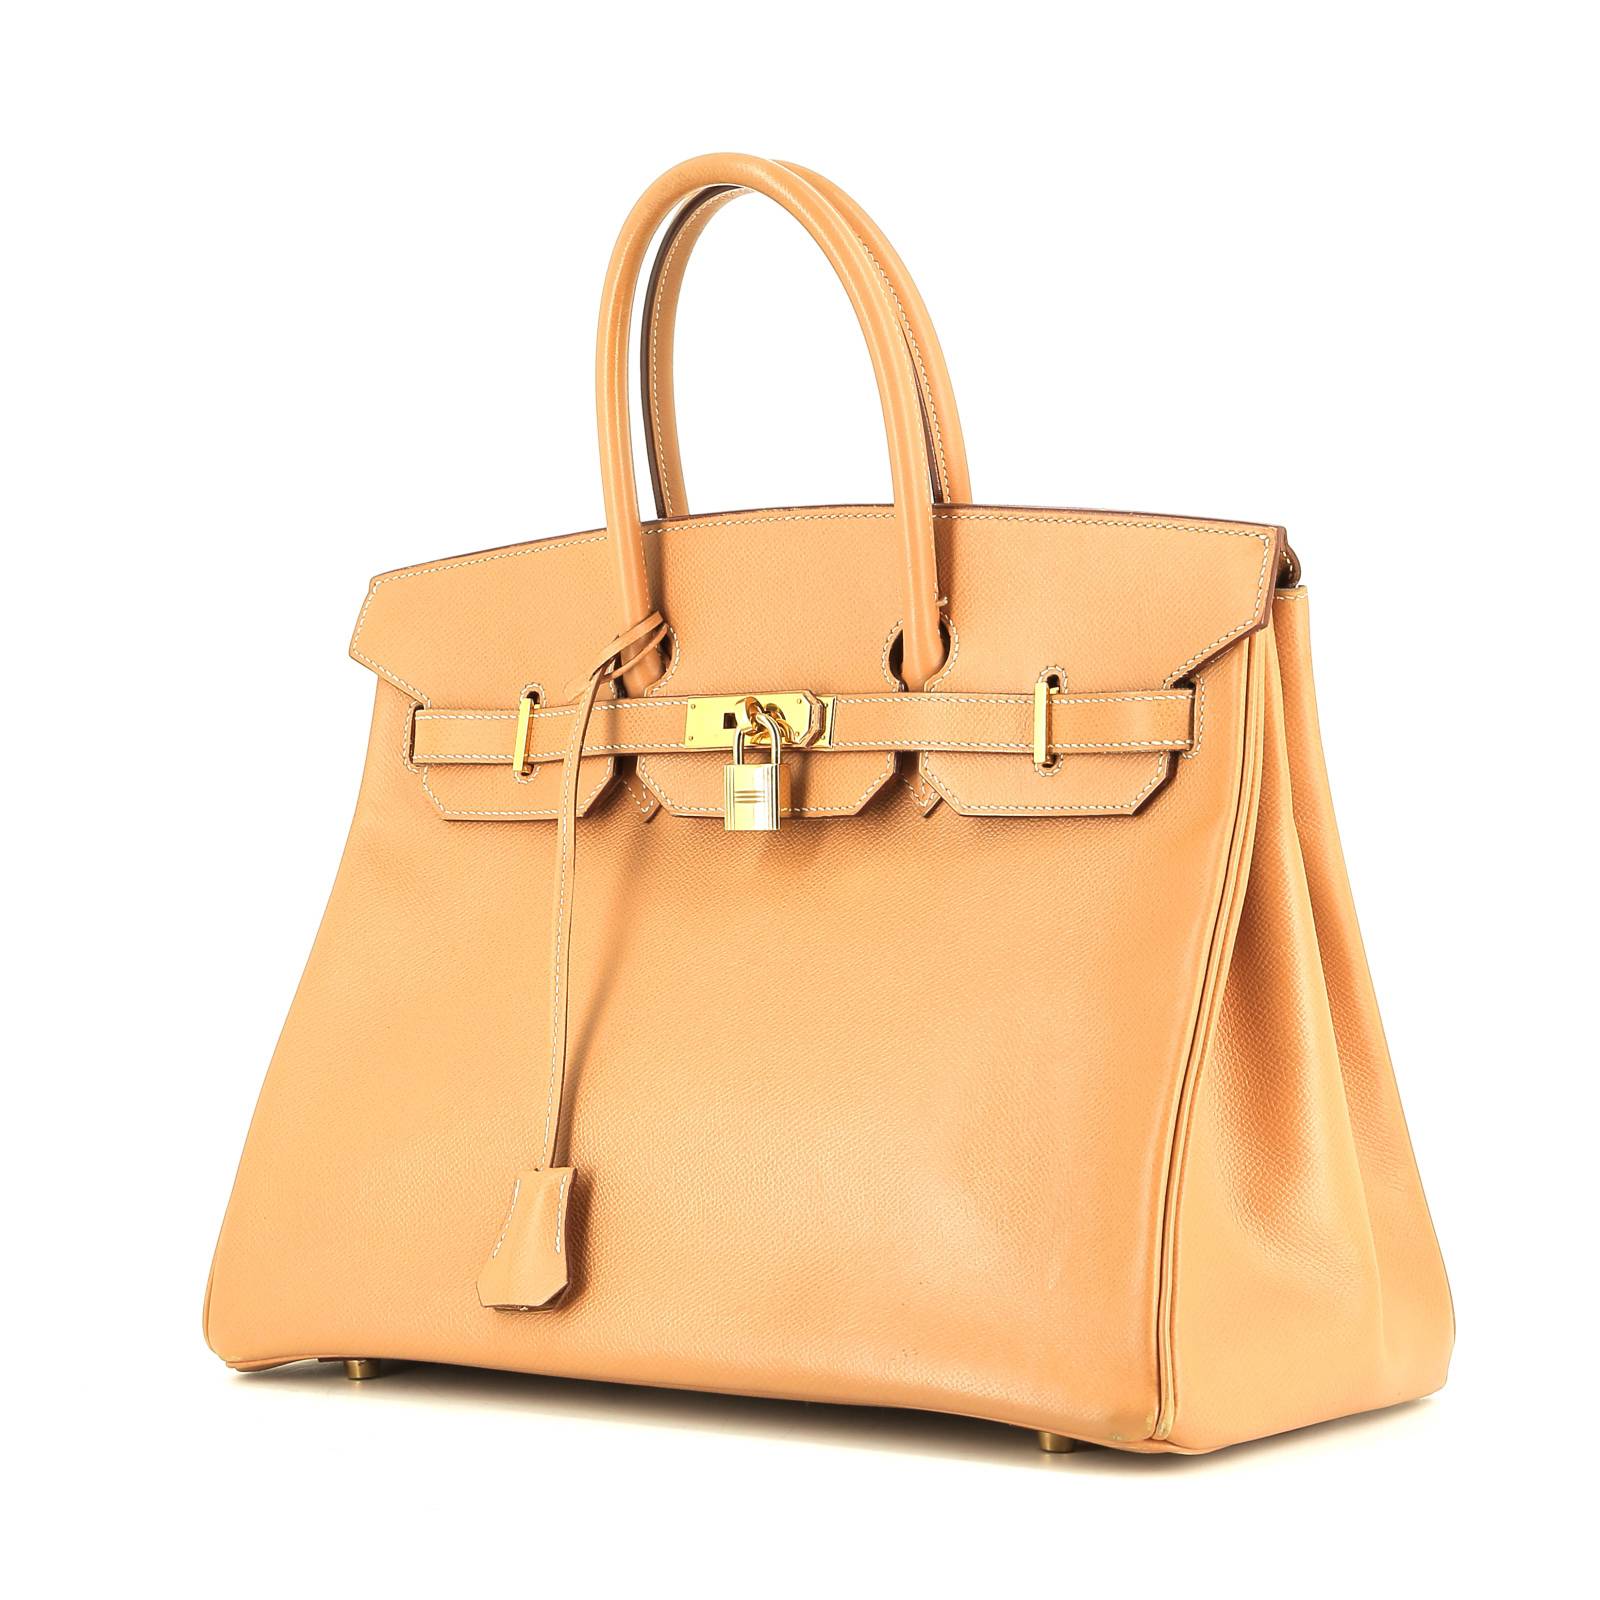 Hermès Birkin Handbag 398610, UhfmrShops